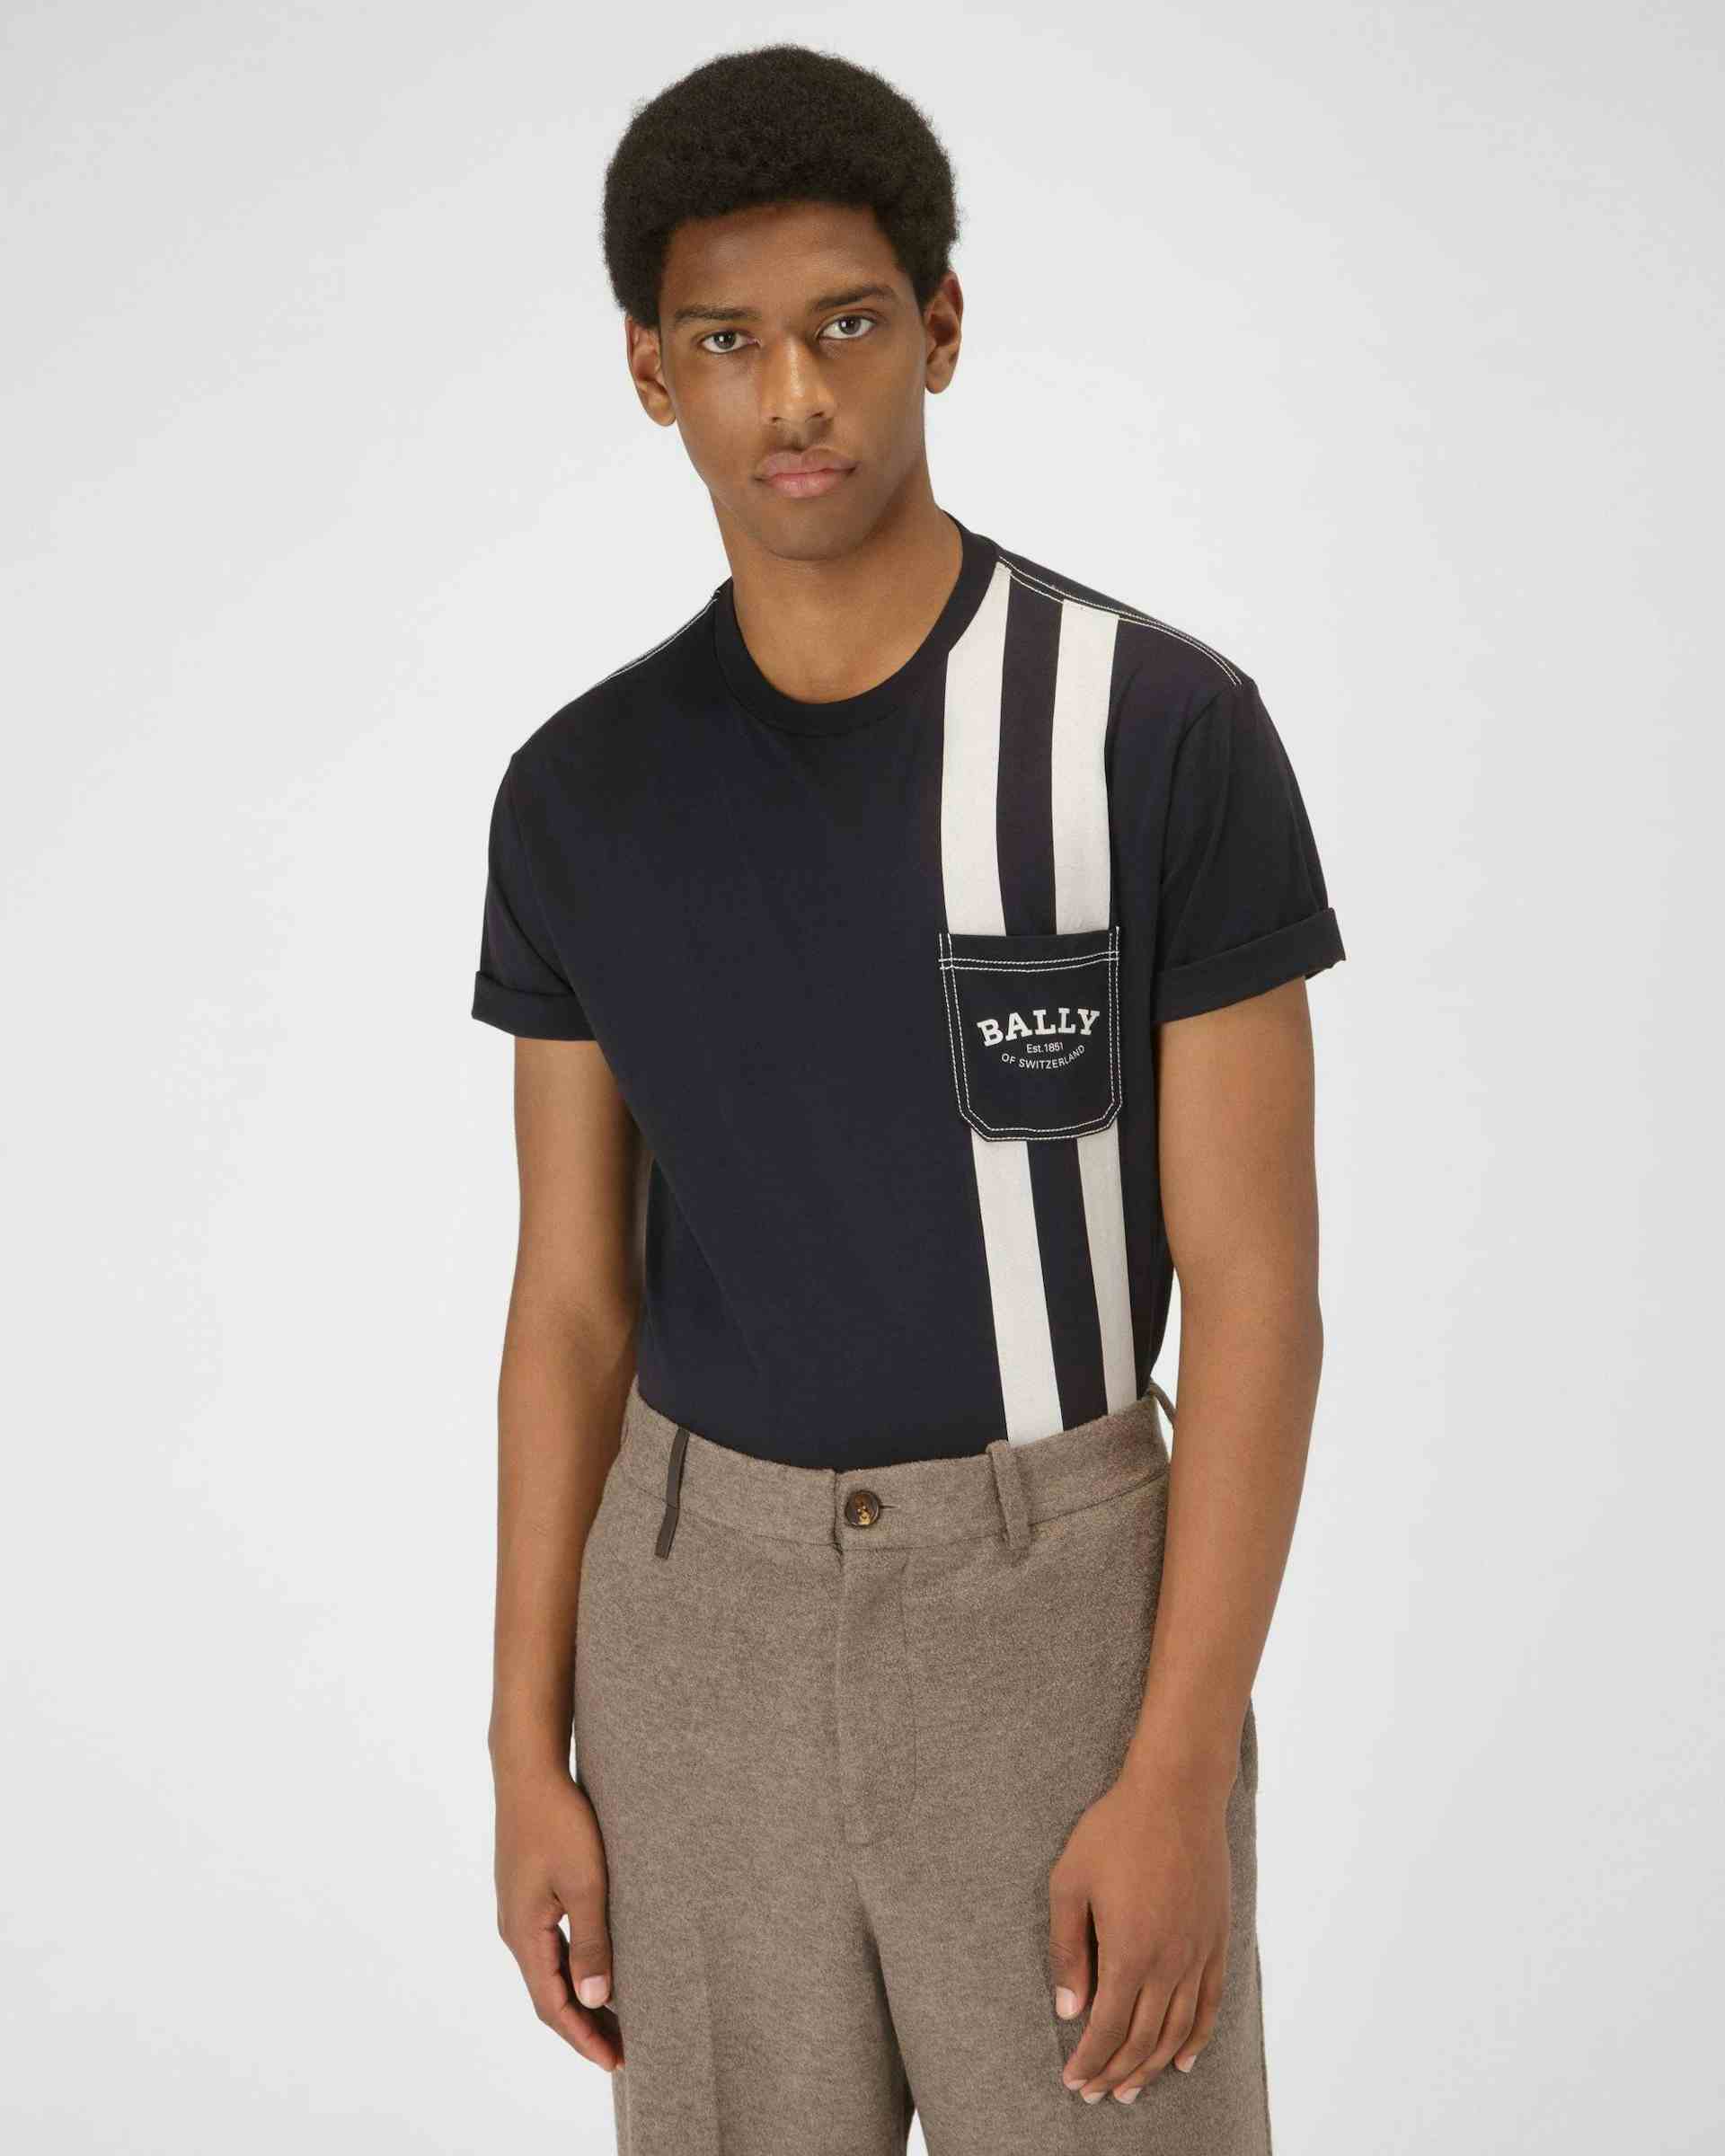 T-Shirt Con Bally Stripe In Cotone Colore Blu Navy - Uomo - Bally